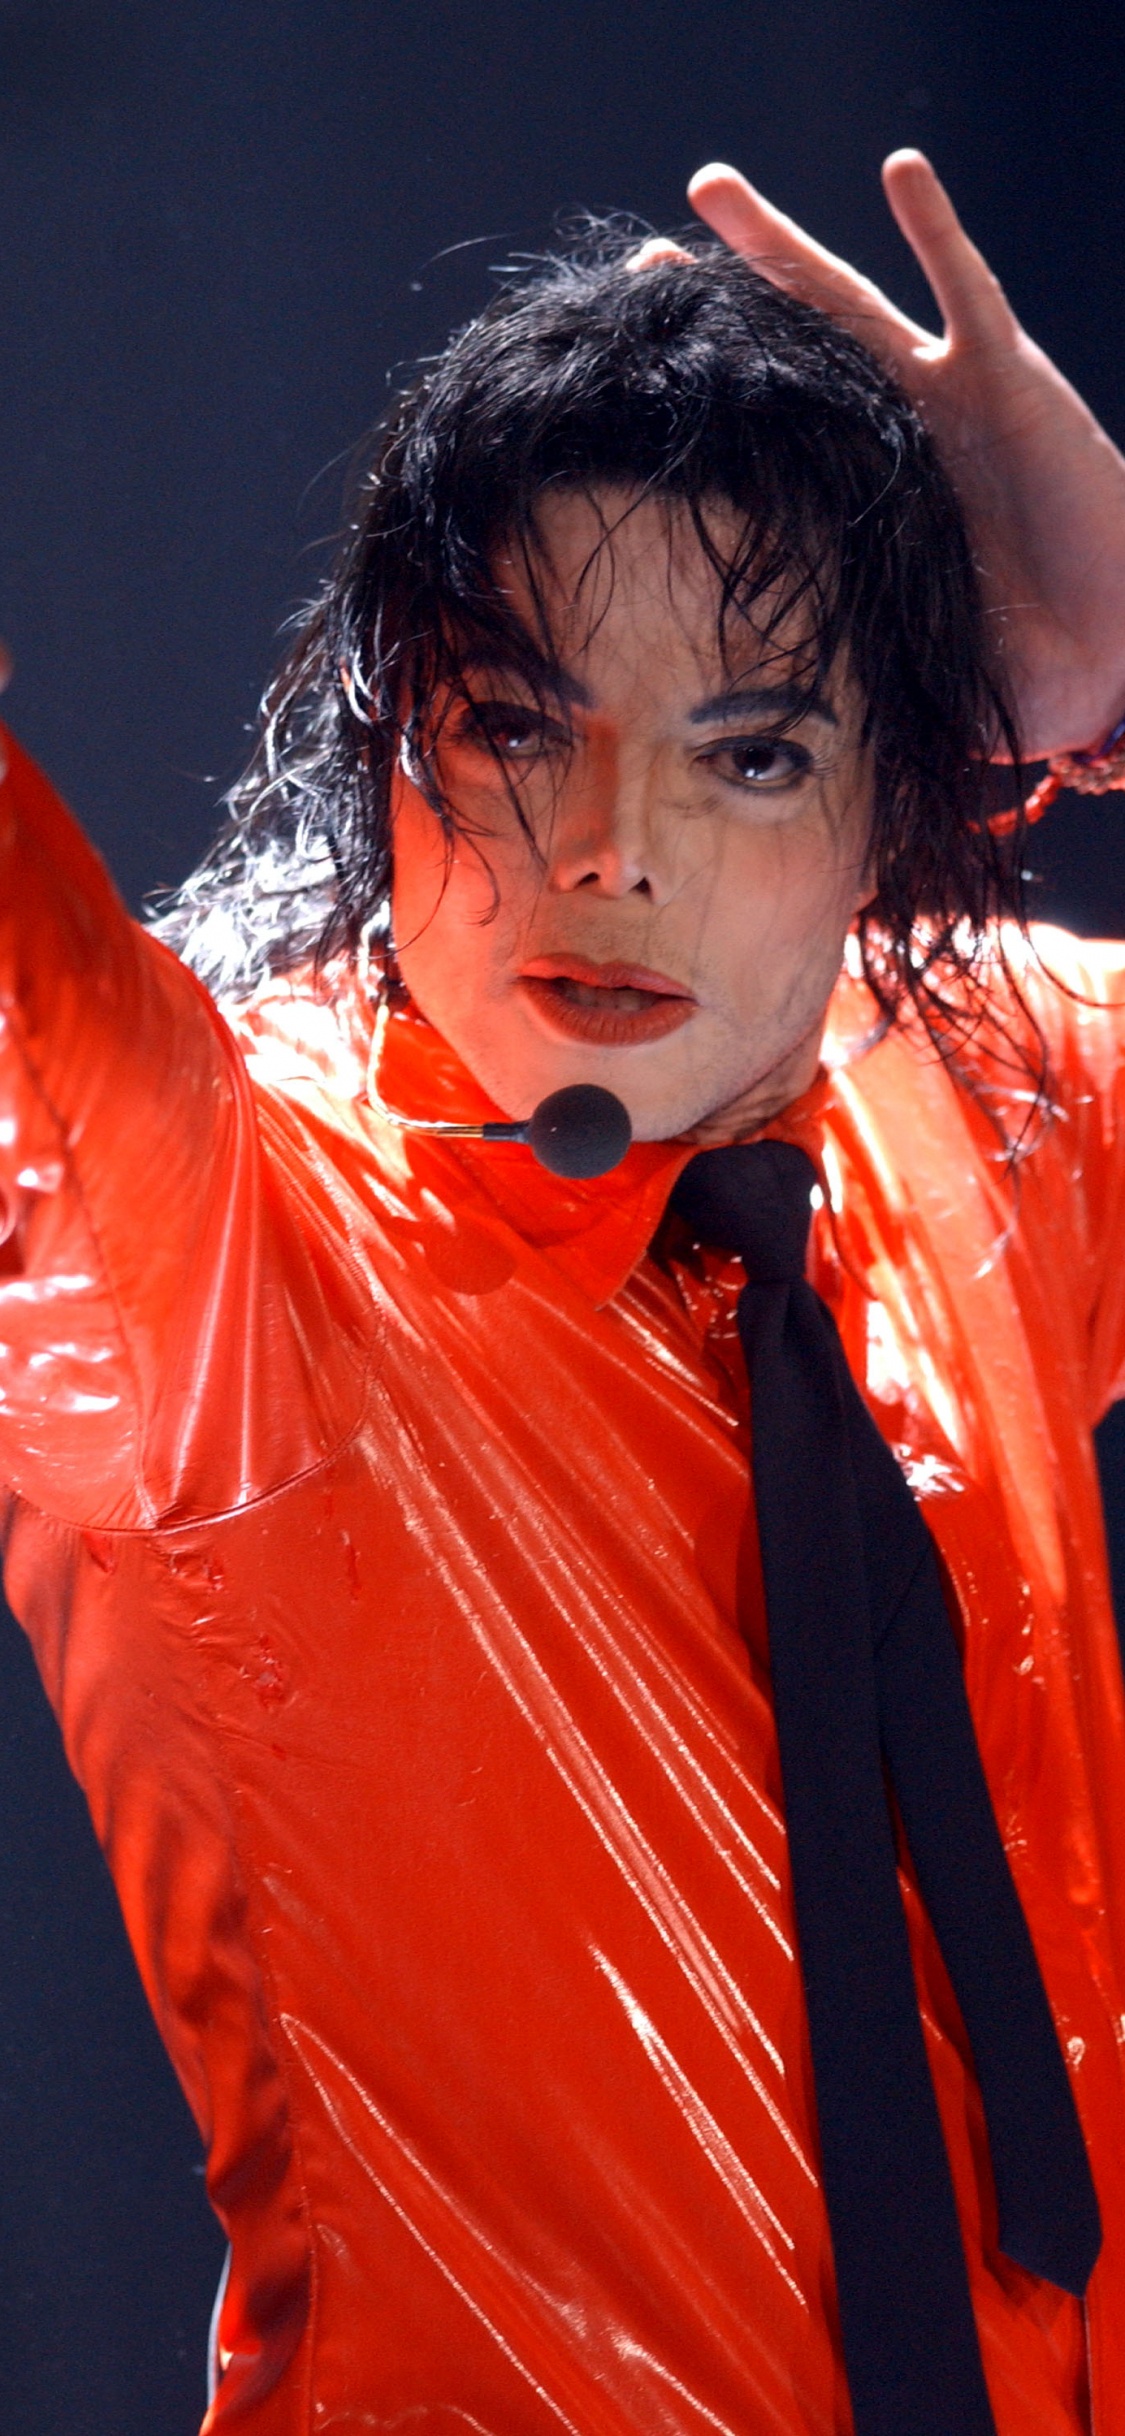 Michael Jackson, Leistung, Darstellende Kunst, Sänger, Stirn. Wallpaper in 1125x2436 Resolution